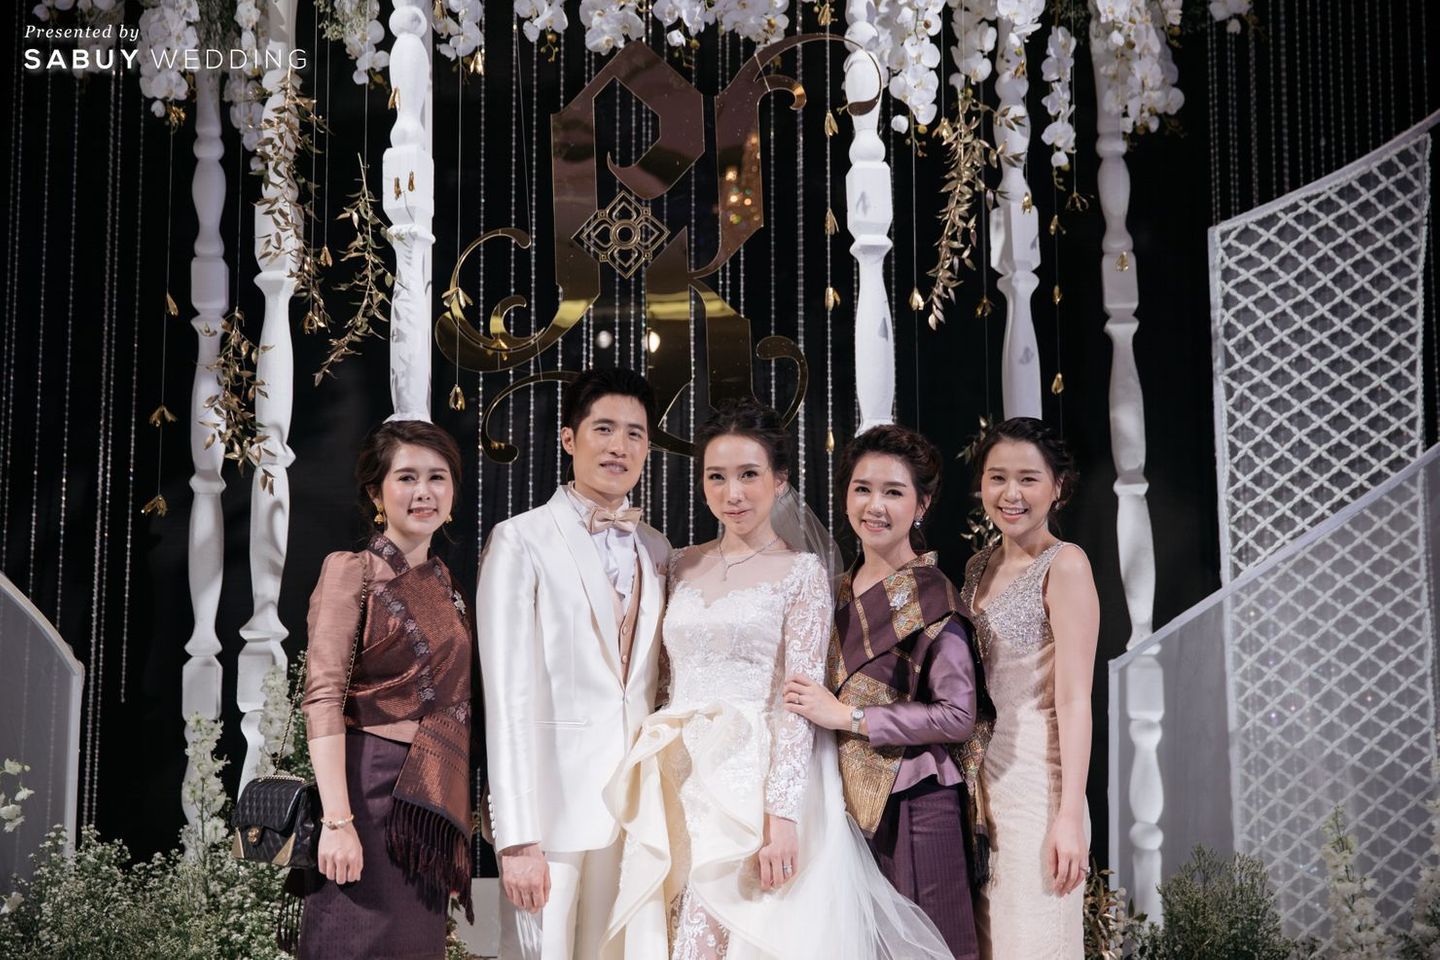 พิธีแต่งงาน,แต่งงาน,เจ้าบ่าว,เจ้าสาว รีวิวงานแต่งไทยประยุกต์ สวยคลาสสิกด้วยโทนขาวทอง @ The Berkeley Hotel Pratunam